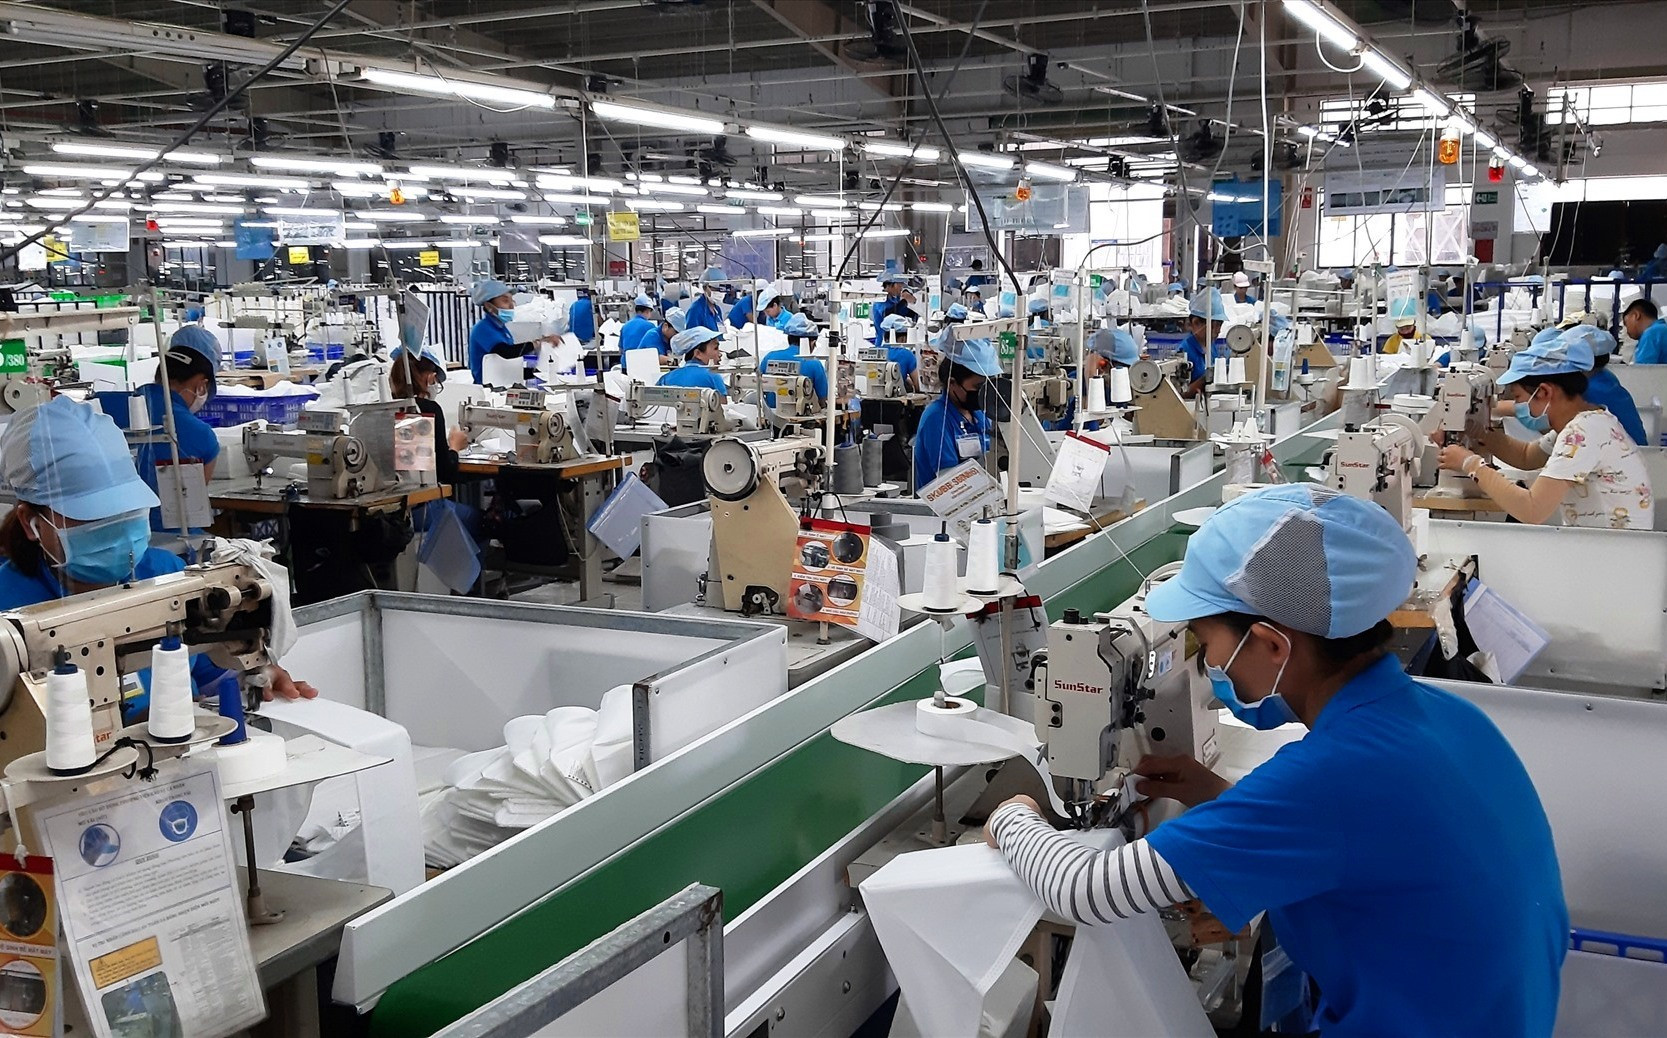 Năm 2020 giá trị sản xuất công nghiệp - tiểu thủ công nghiệp của Duy Xuyên đạt 4.491 tỷ đồng, tăng 9,1% so với năm ngoái. Ảnh: T.L